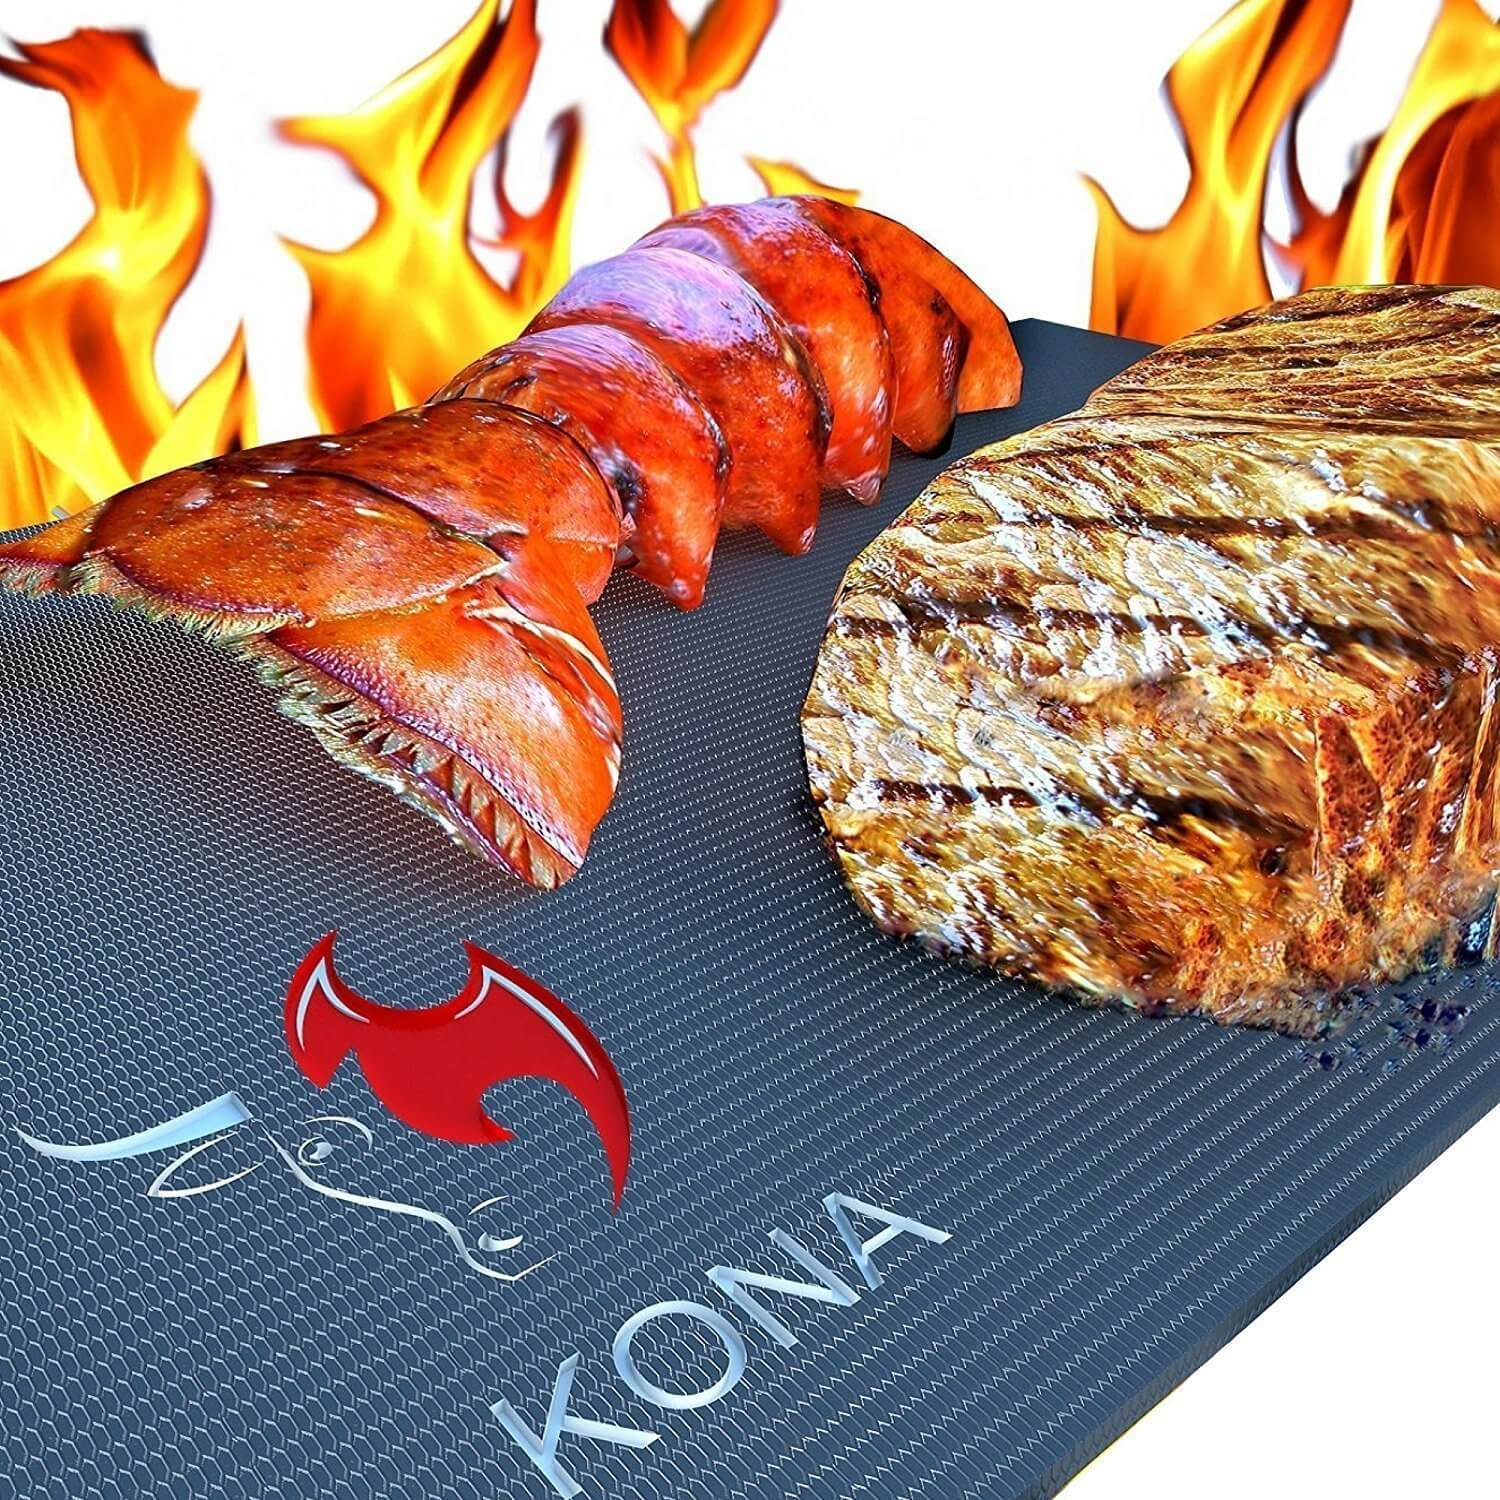 KONA Best Heavy Duty 600 Degree Non-Stick BBQ Grill Mat